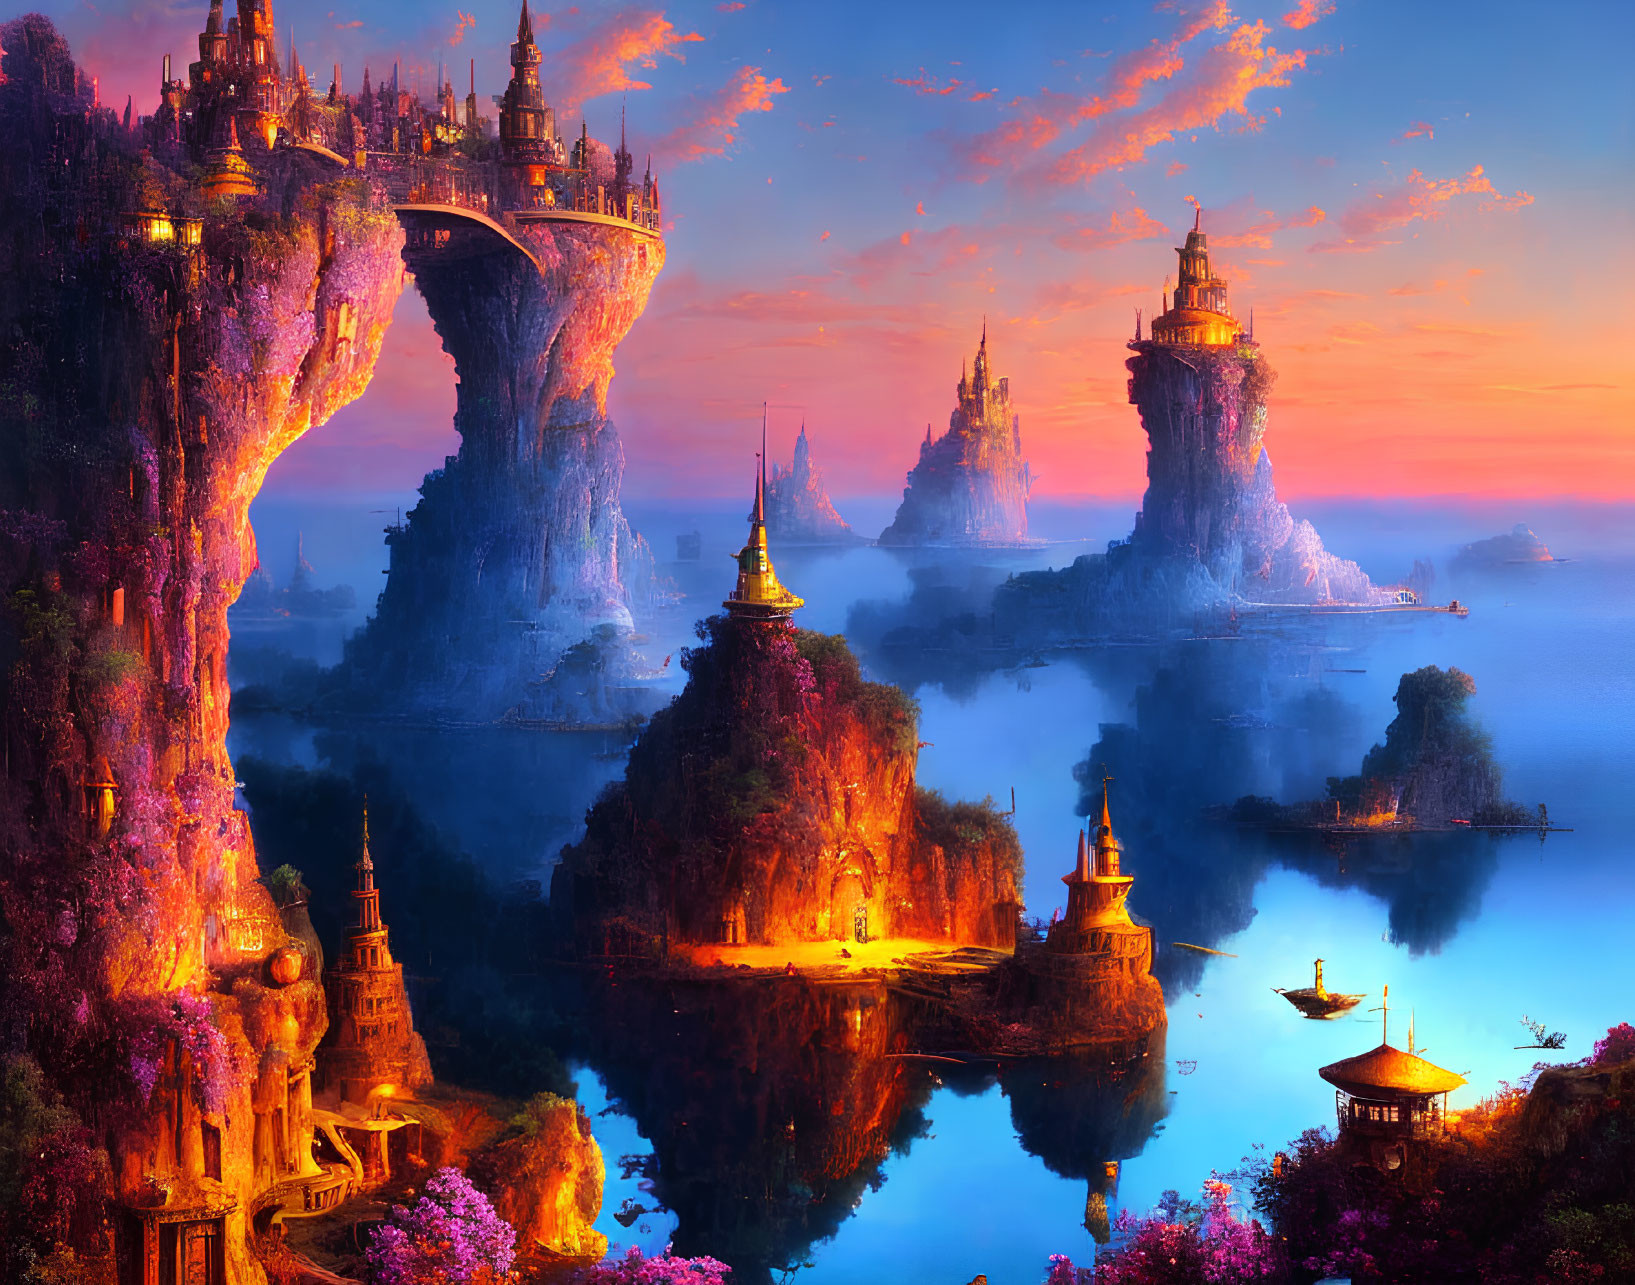 Fantasy landscape with cliffside castles in sunset-hued sky